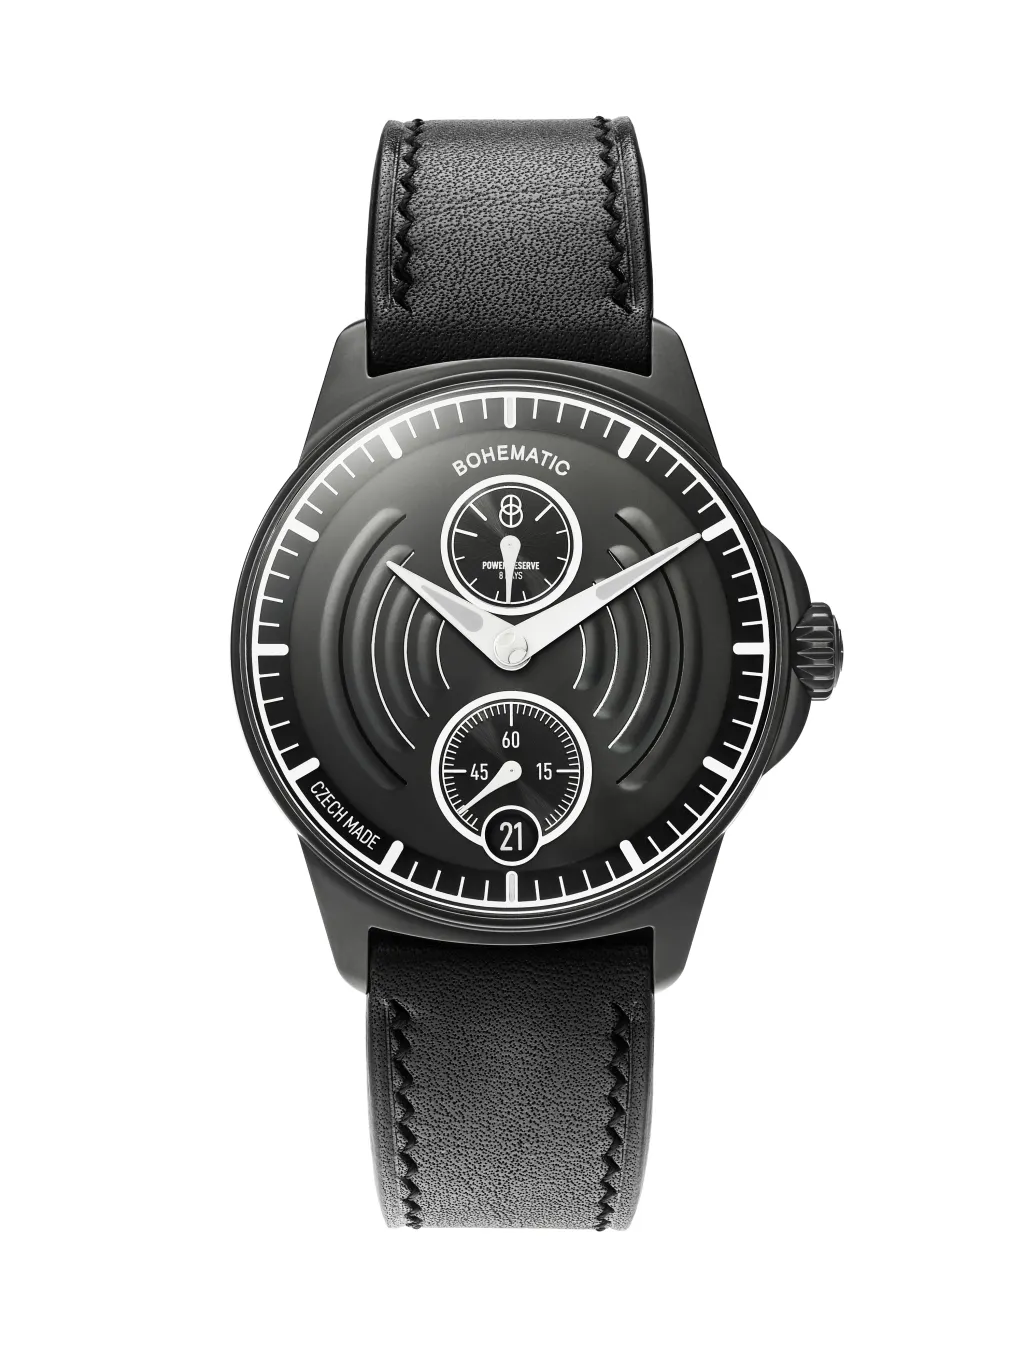 Mezi šperky porota vybrala kolekci hodinek Aerodynamic, které pro značku Bohematic navrhlo zavedené Studio Olgoj Chorchoj designérů Michala Froňka a Jana Němečka. Povedlo se jim propojit precizní řemeslo a prvotřídní design